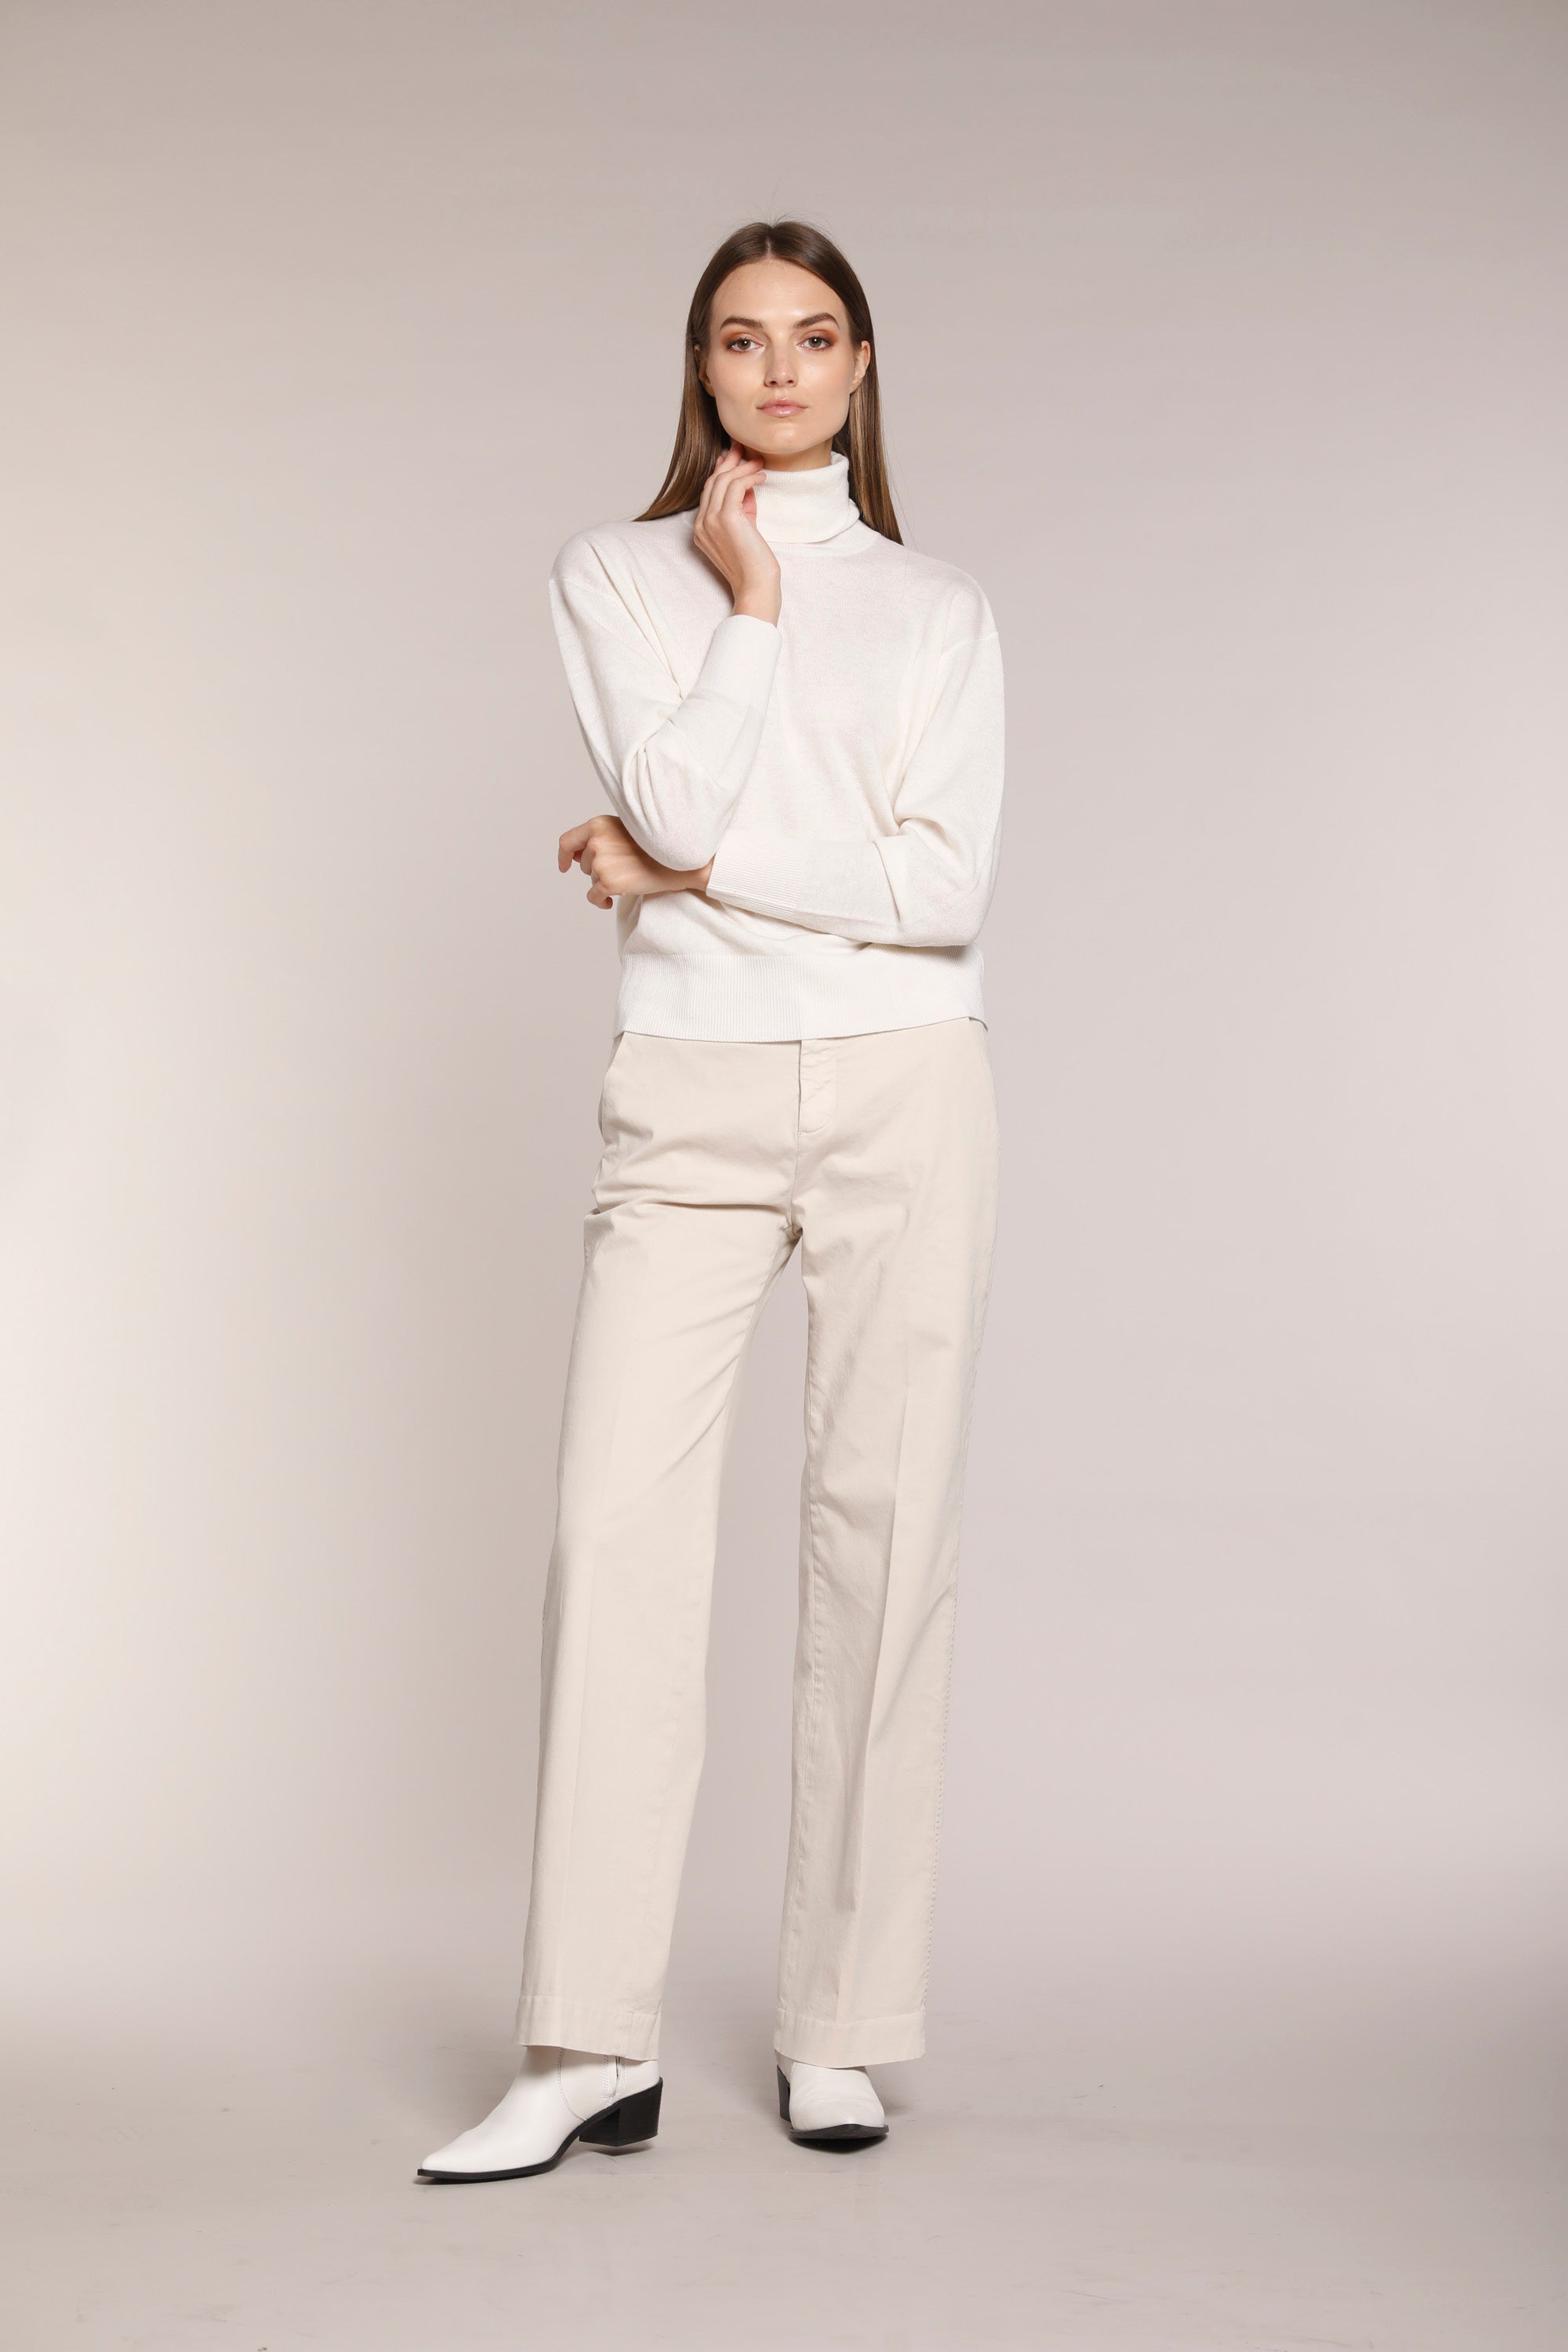 Image 2 du pantalon chino femme en satin couleur glace modèle New York Straight par Mason's